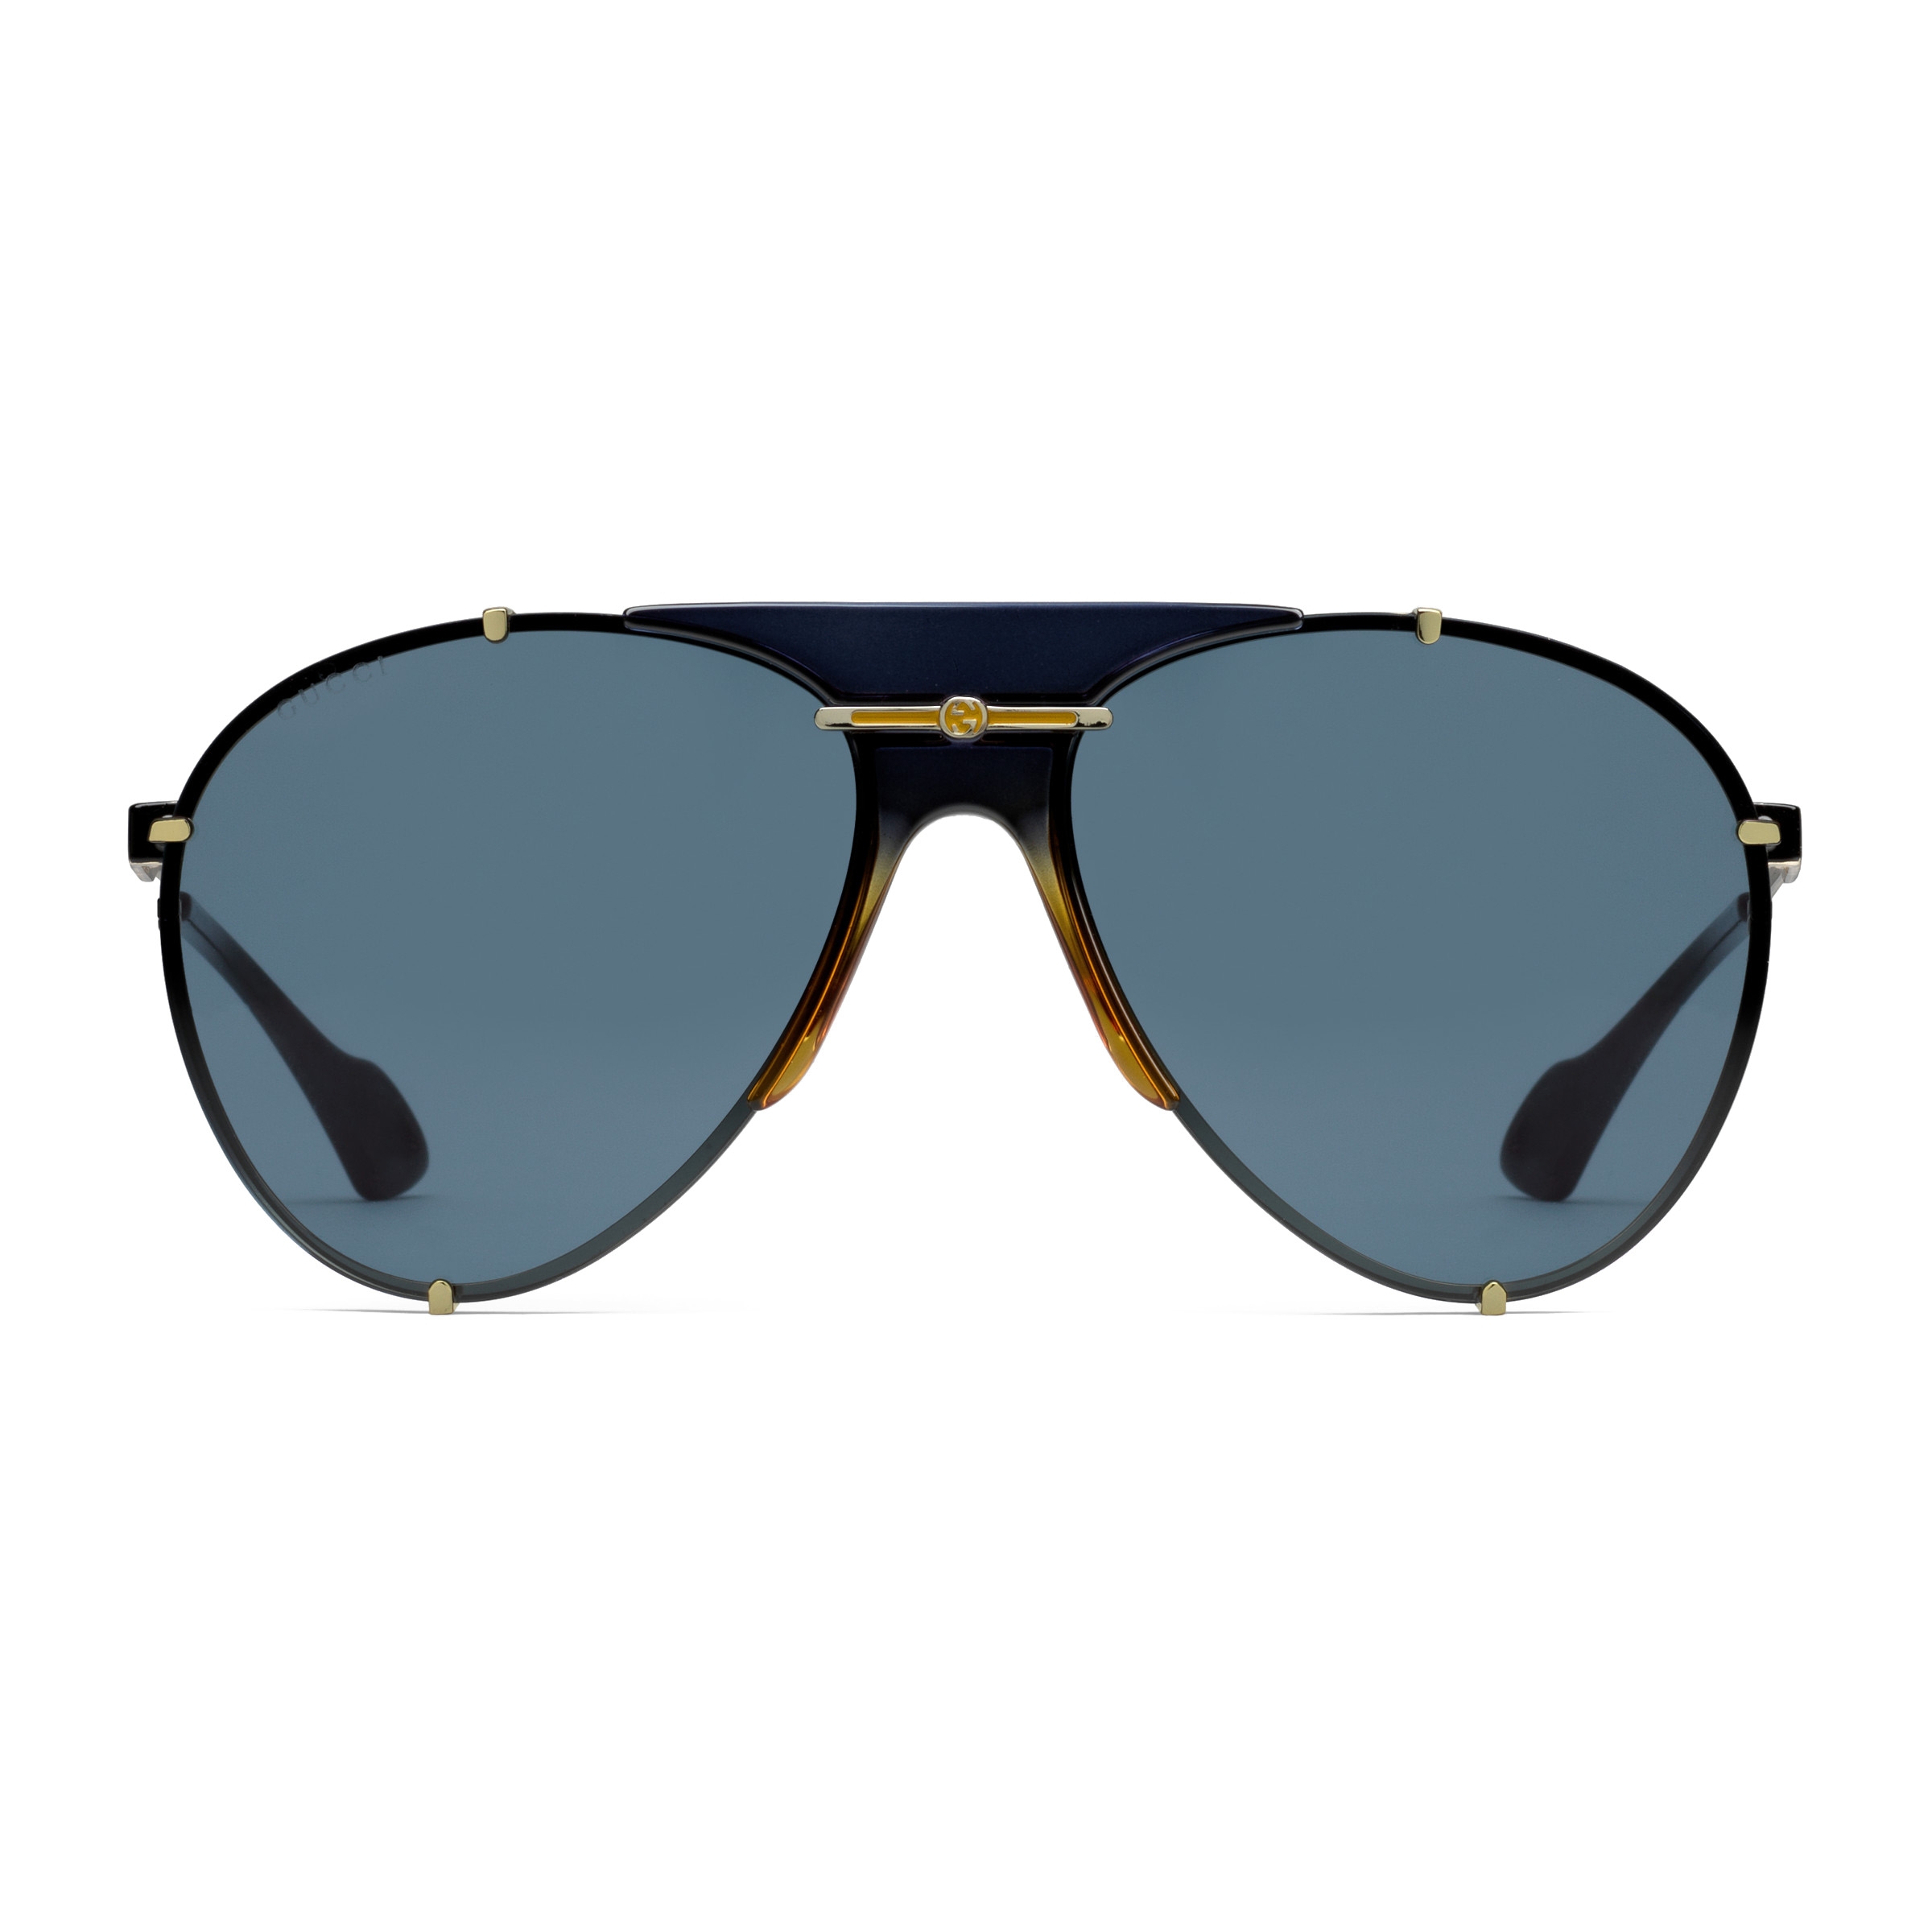 gucci white and gold aviator sunglasses